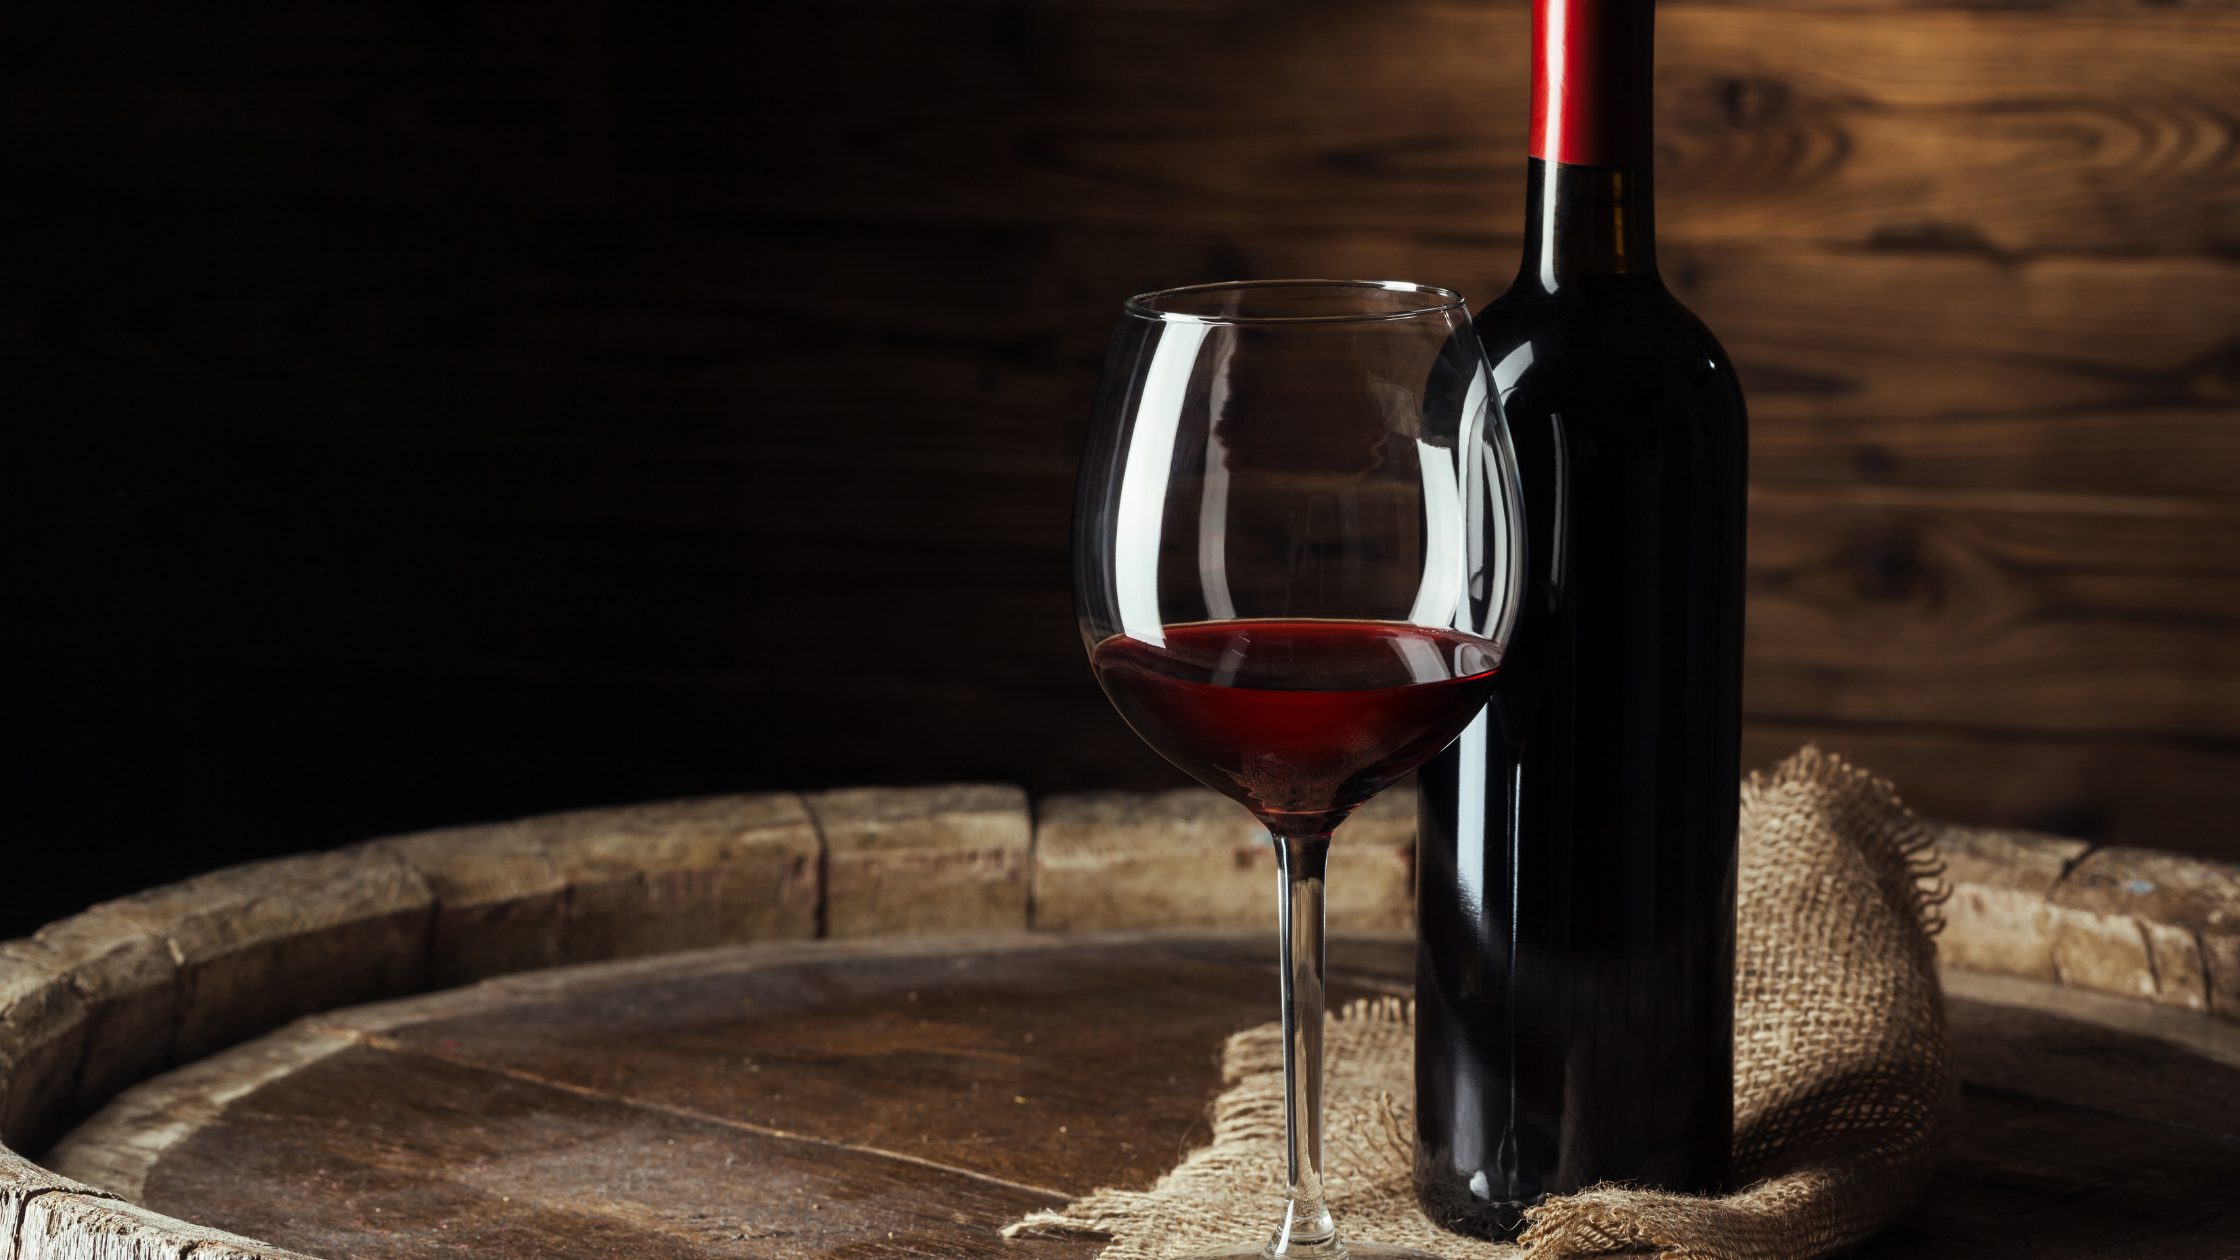 Dicas para iniciante: veja como começar a degustar vinho|uma taça para aprender como degustar vinho